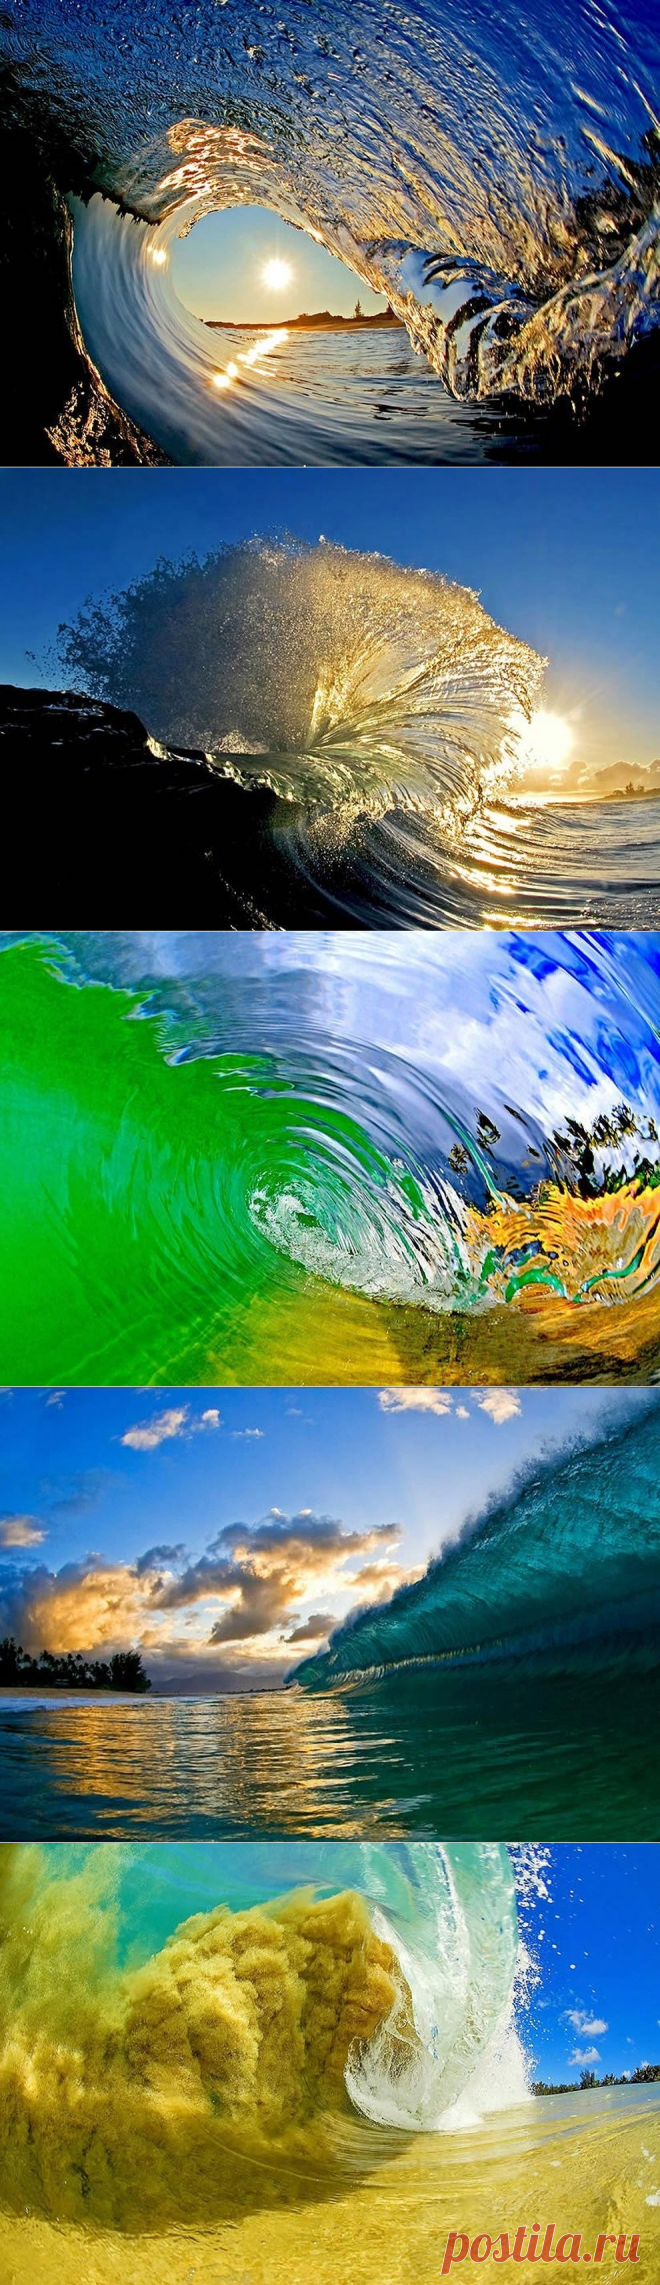 Красивые волны от фотографа Кларка Литтла - Путешествуем вместе